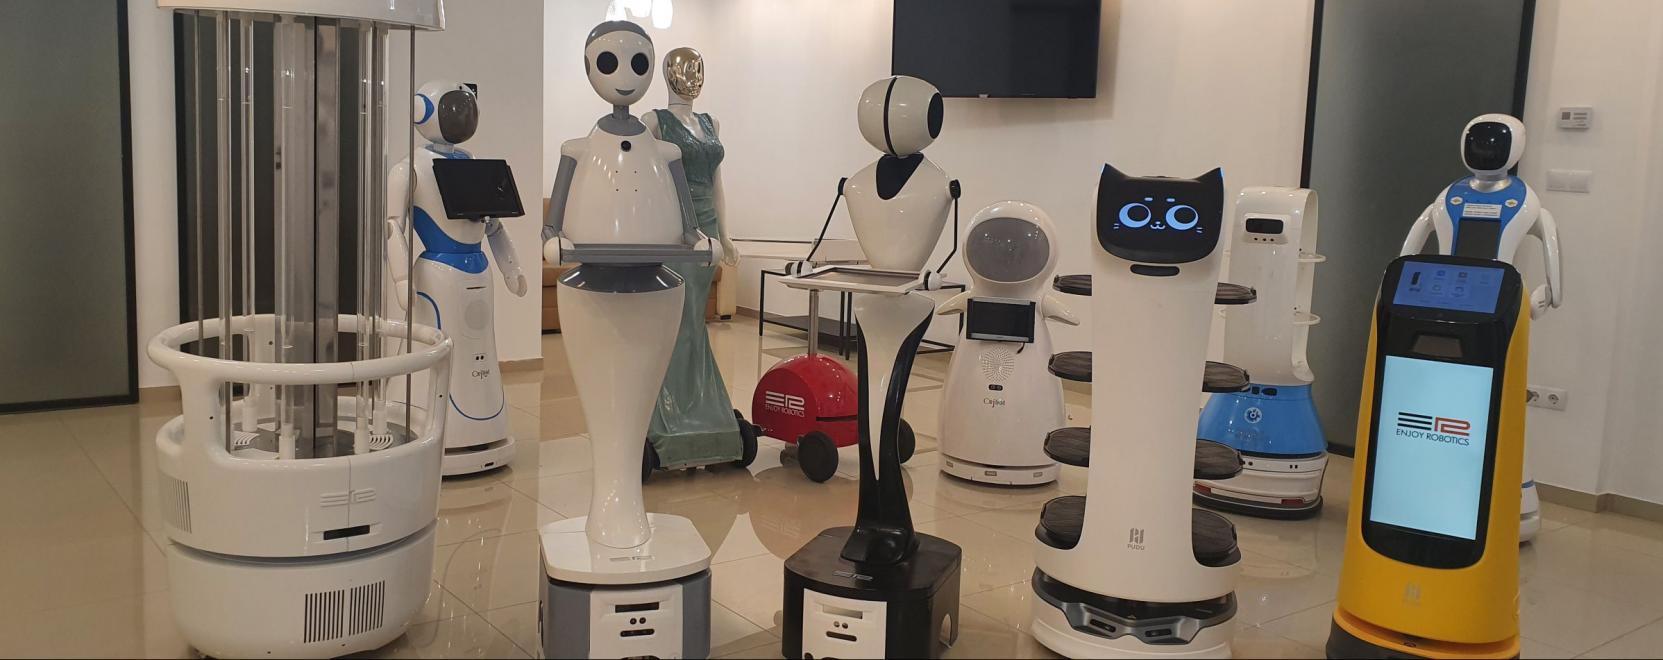 Robotok ezrei segíthetik az emberek munkáját Magyarországon